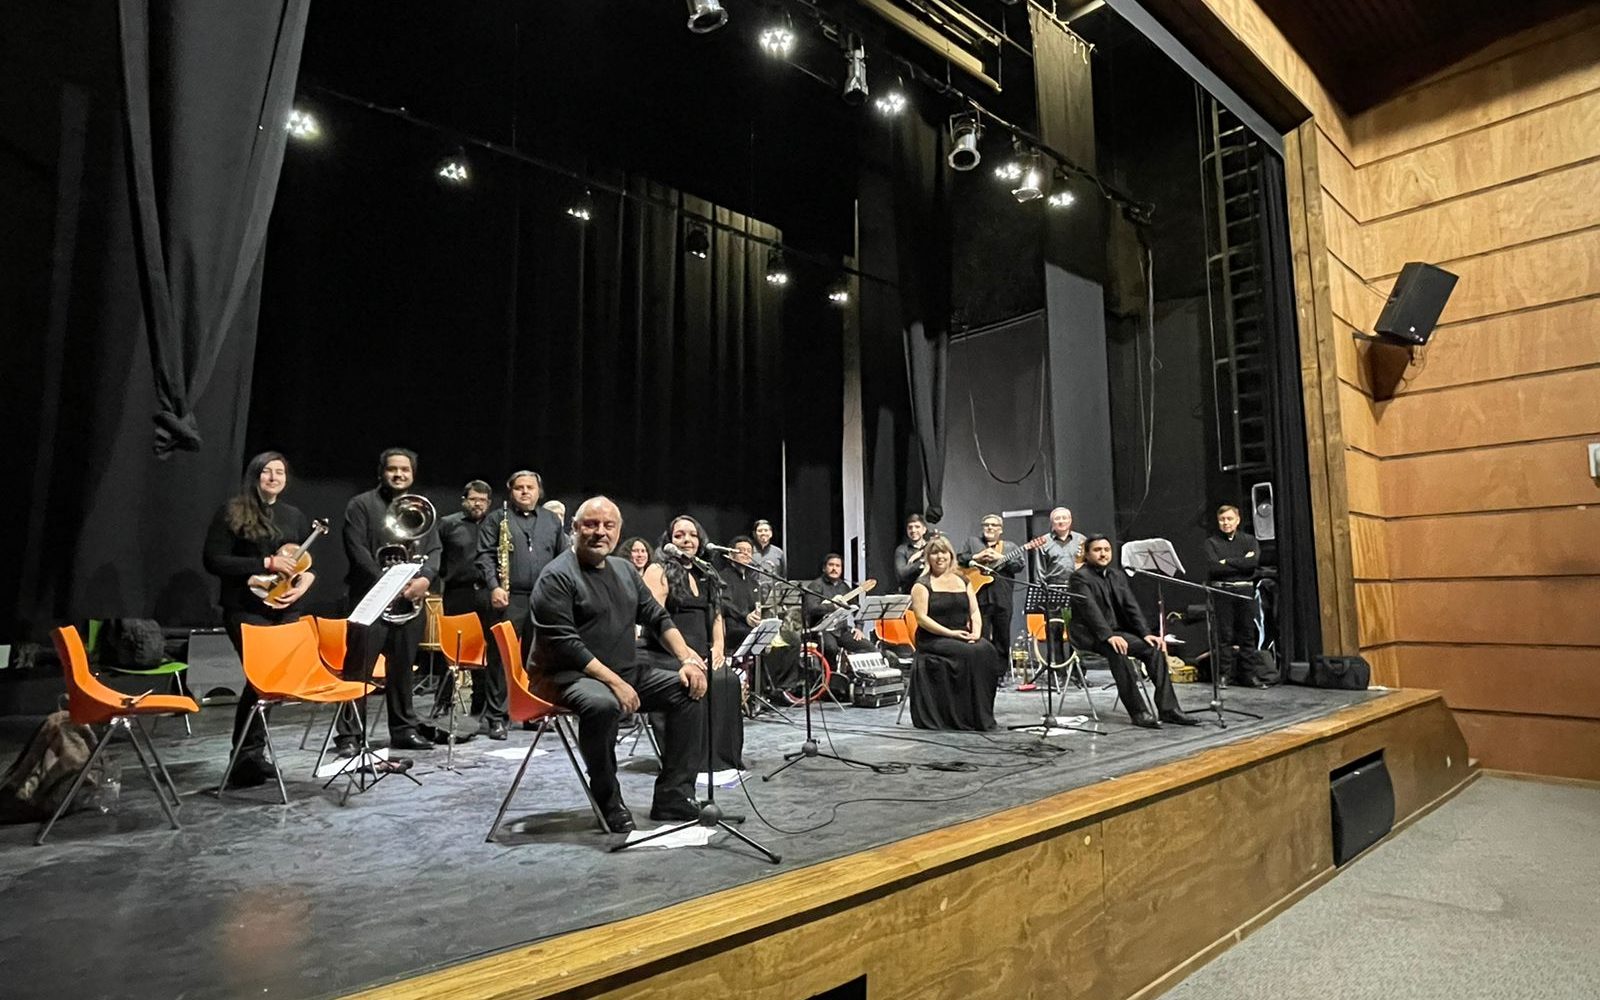 Orquesta Folclórica de Chile Homenaje a Germán Concha Pardo se presentará en el Teatro Regional Cervantes con un repertorio folclórico de calidad